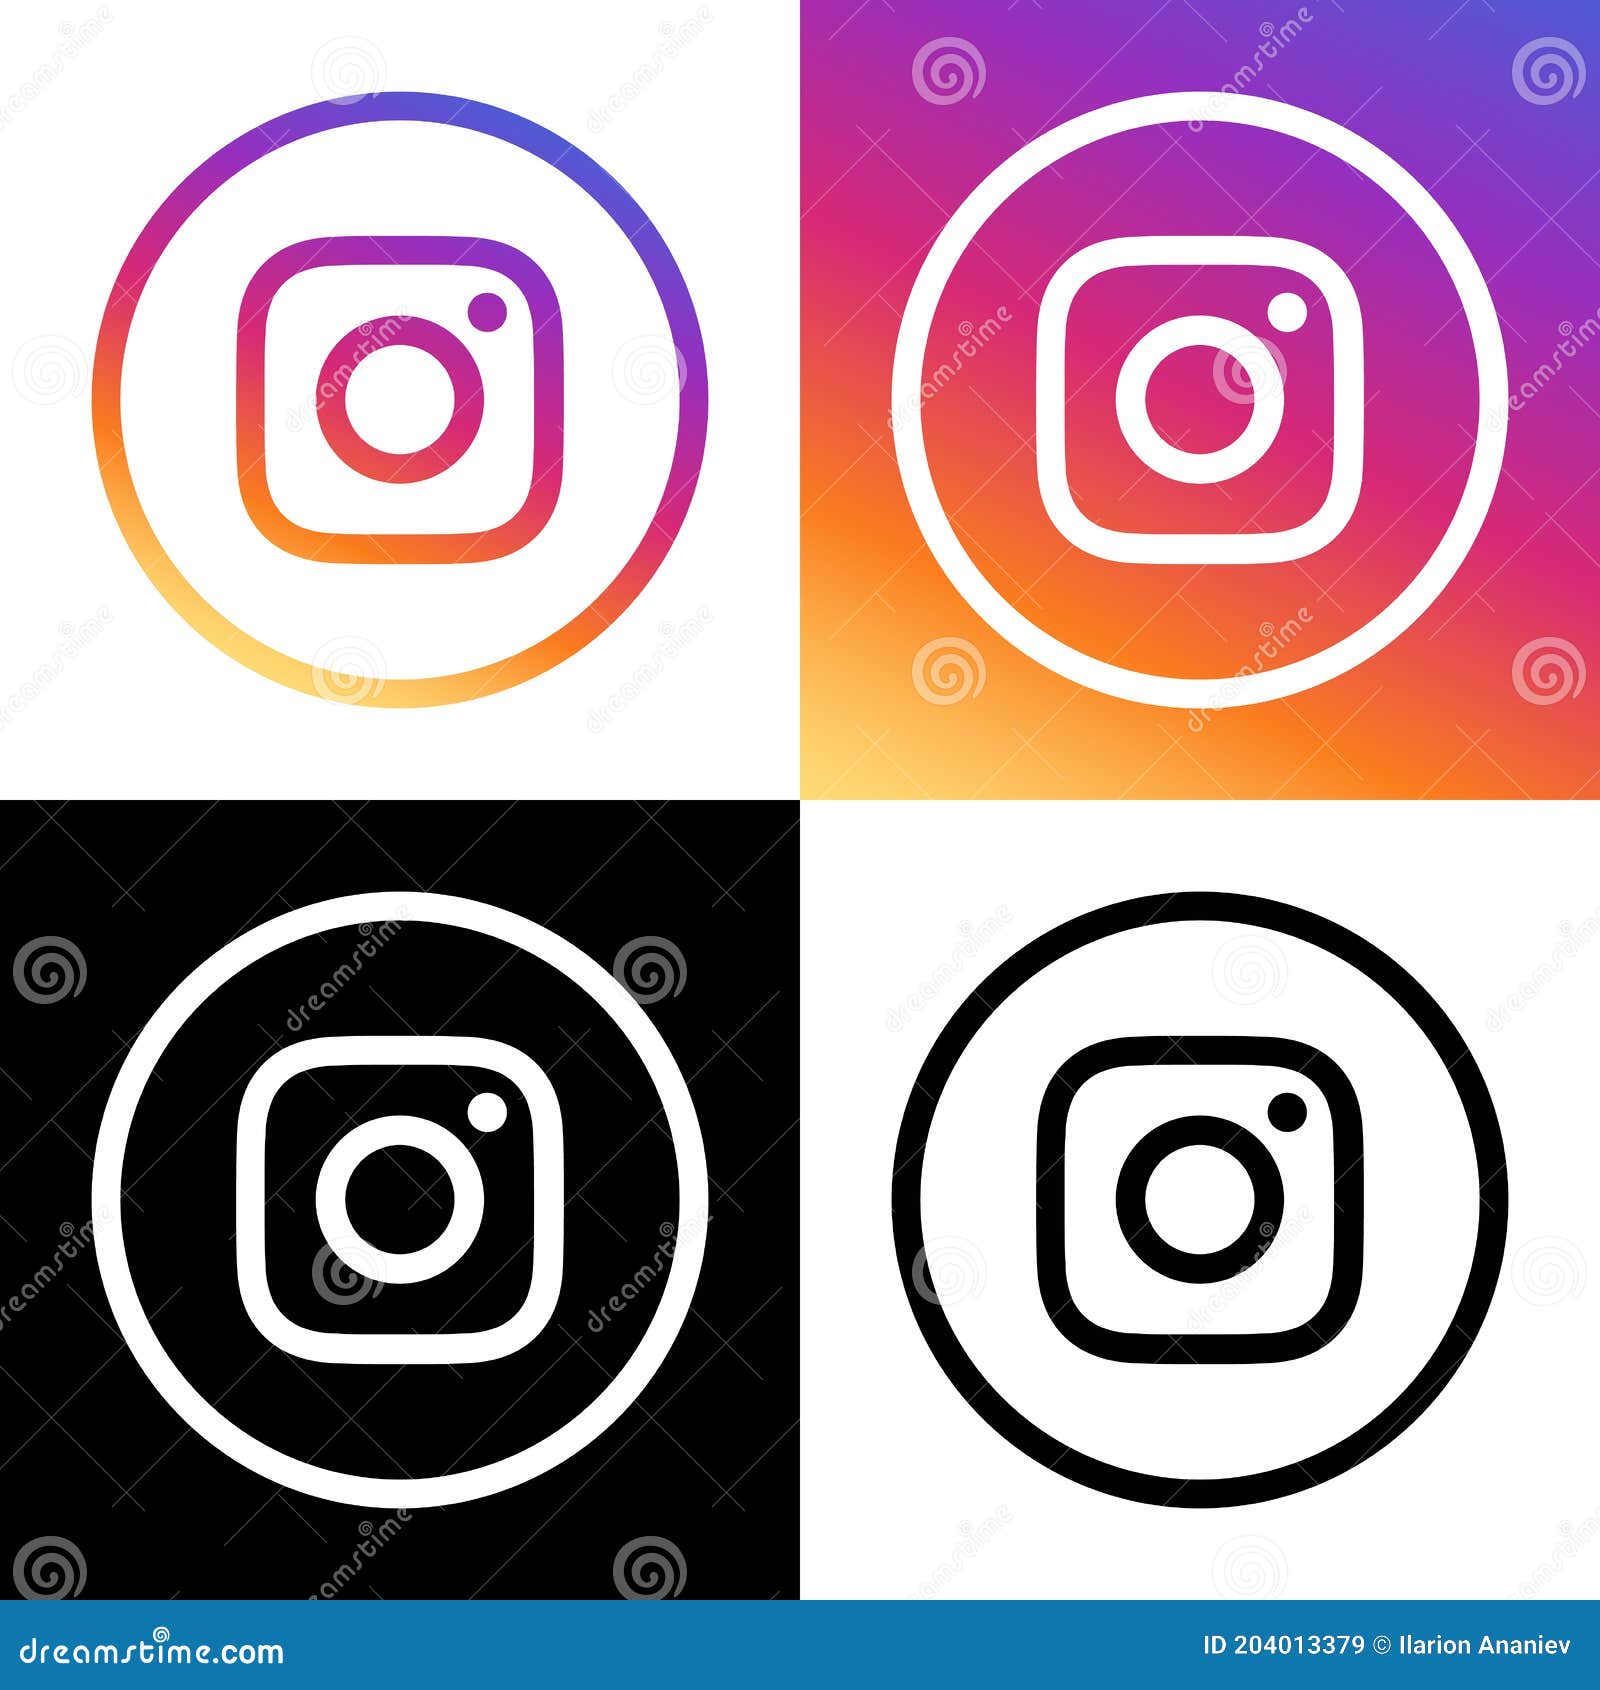 Bạn đang tìm kiếm mẫu ảnh chất lượng cho bài đăng Instagram của mình? Hãy xem ảnh liên quan của chúng tôi từ khóa Black iced coffee Instagram post template